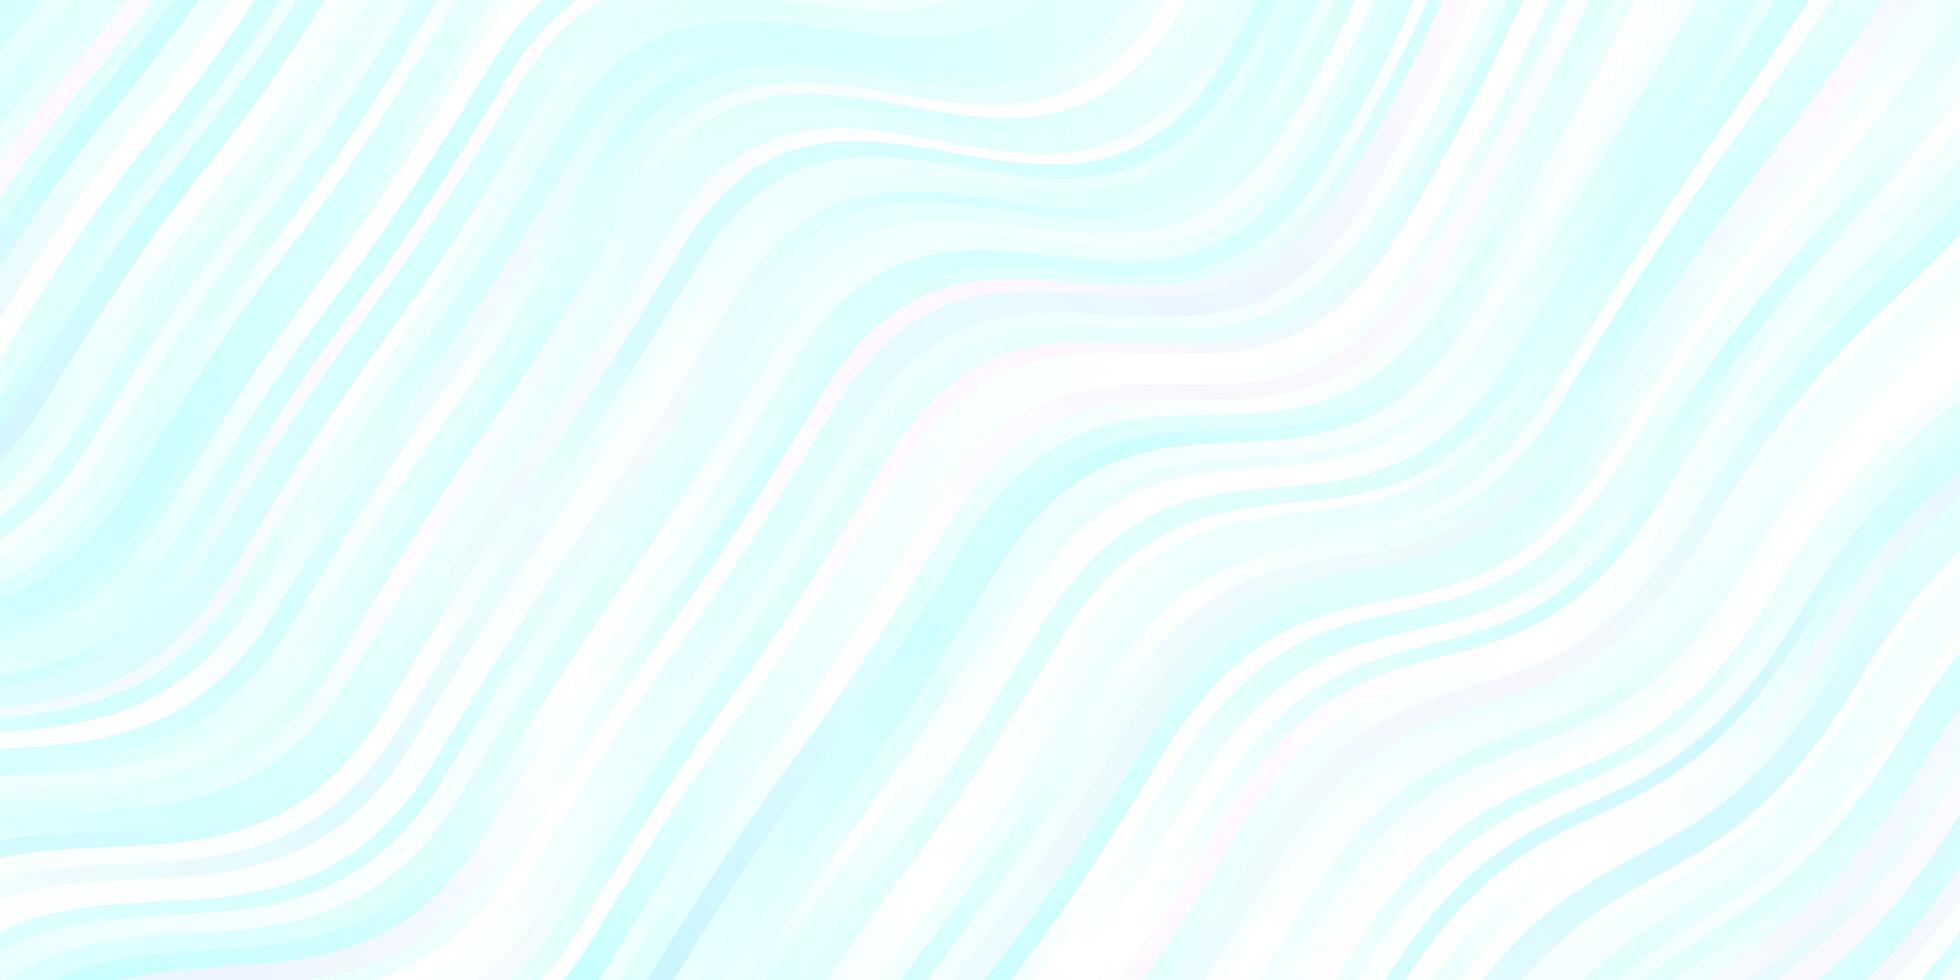 pano de fundo vector azul claro com linhas dobradas